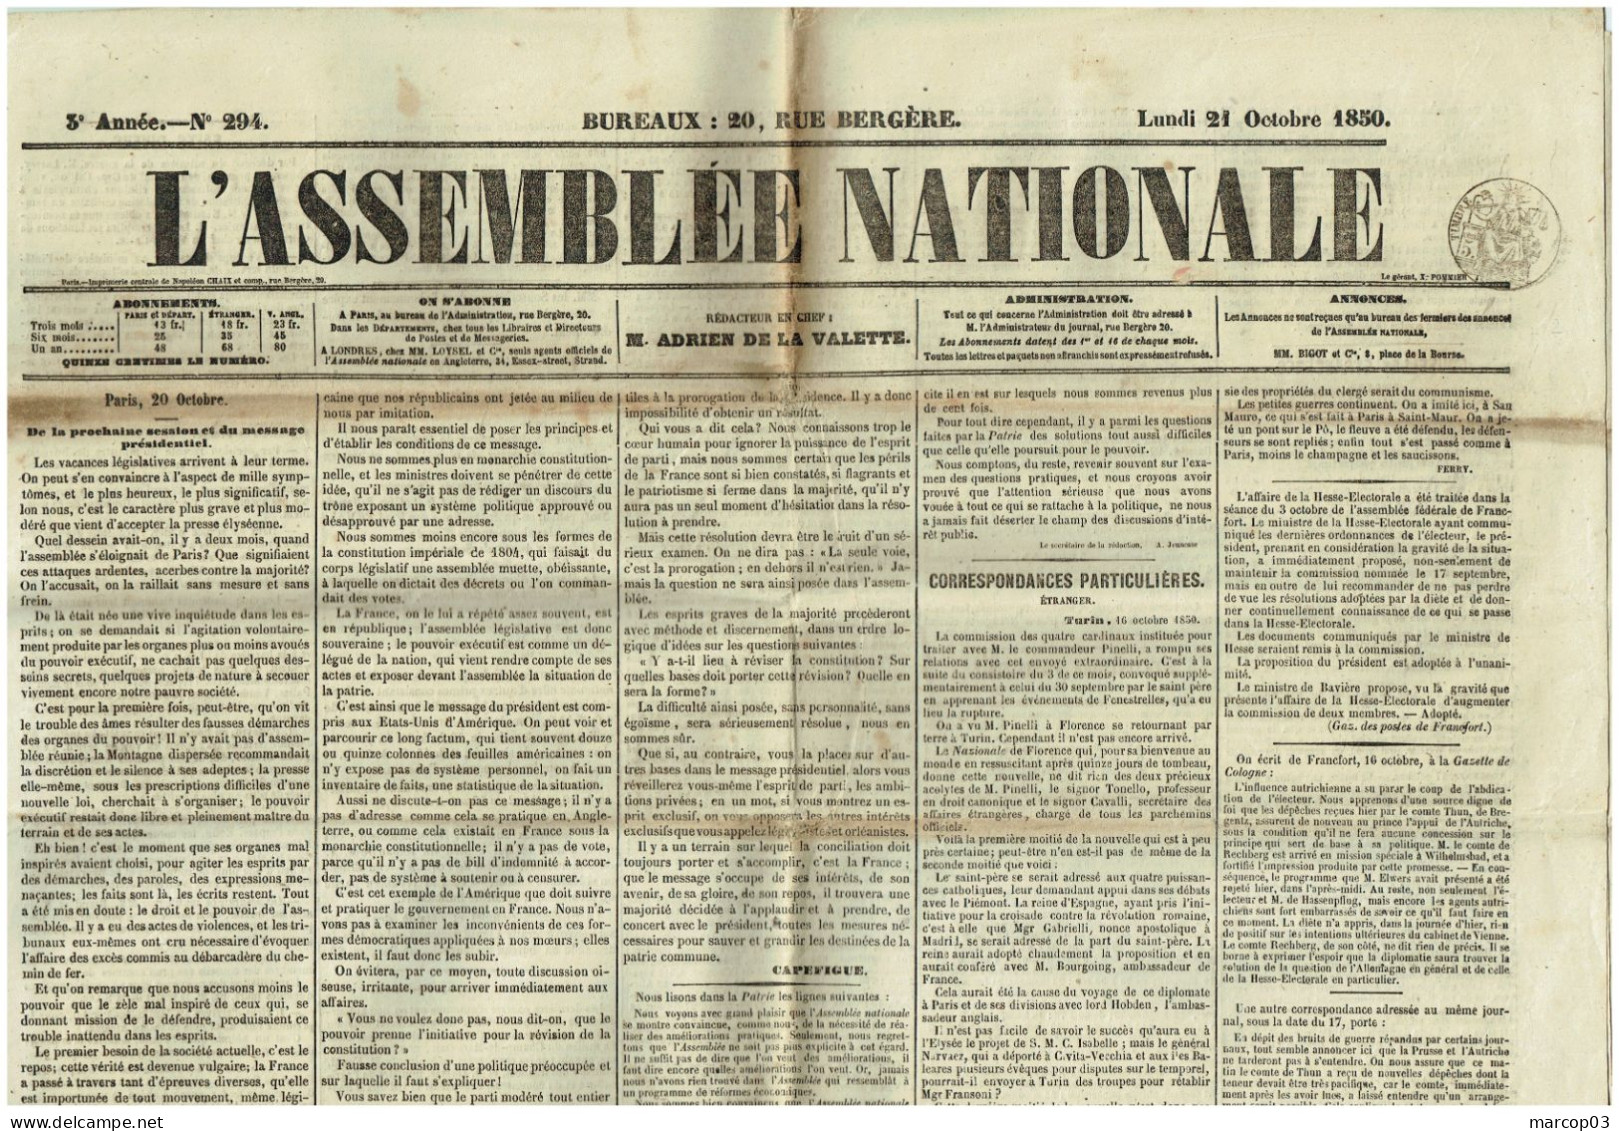 75 PARIS Journal L'Assemblée Nationale Du 21/10/1850  Droit Fiscal/postal De Timbre De 5 C SEINE Journal Complet TTB - Journaux